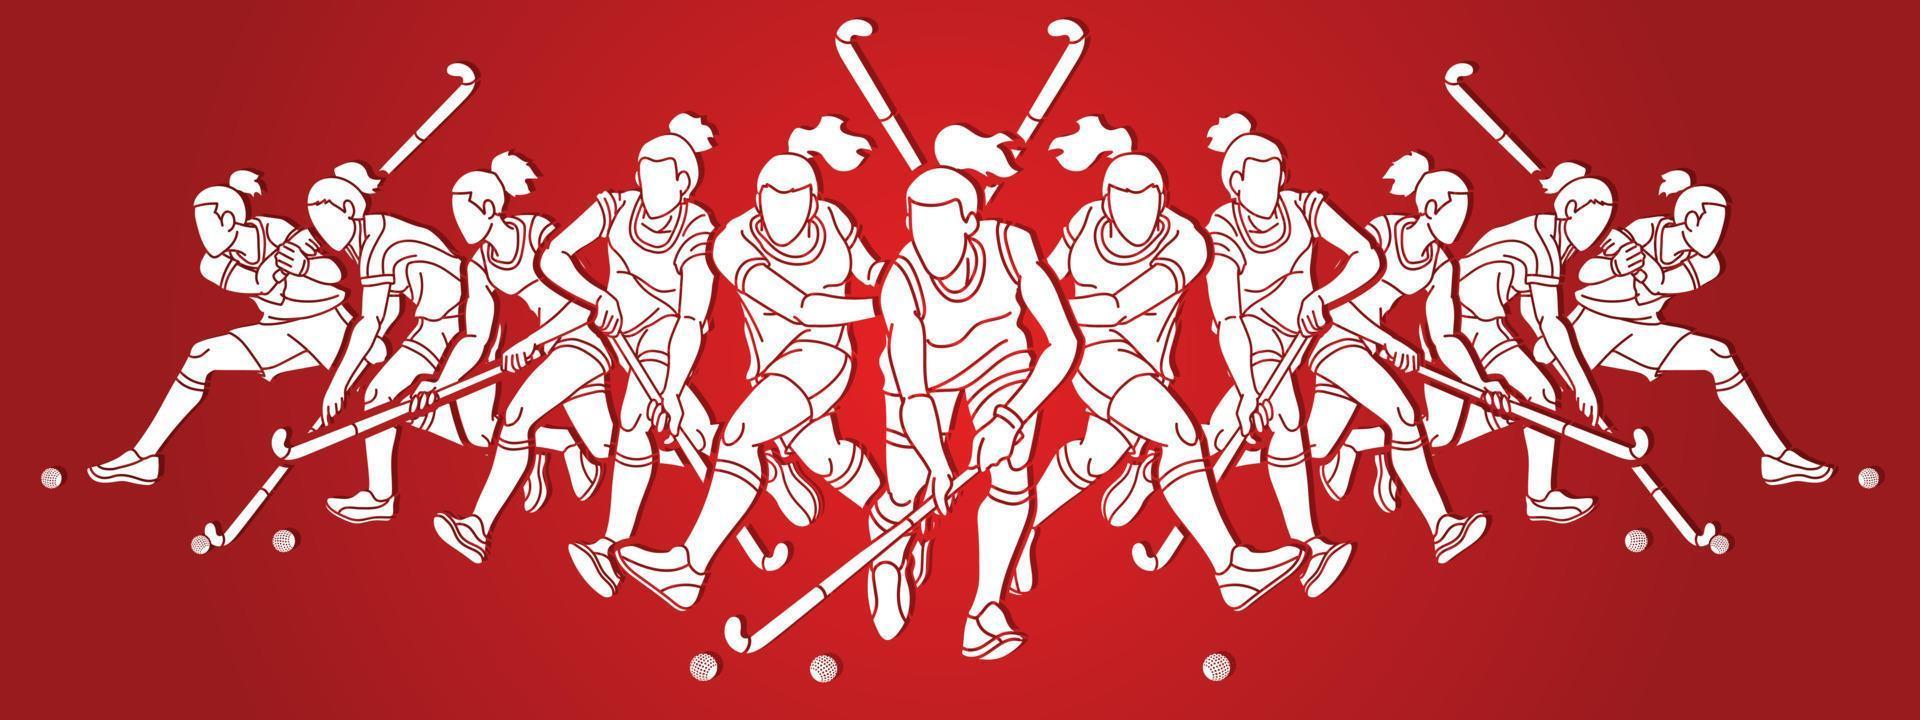 team feldhockey sport weibliche spieler aktion vektor